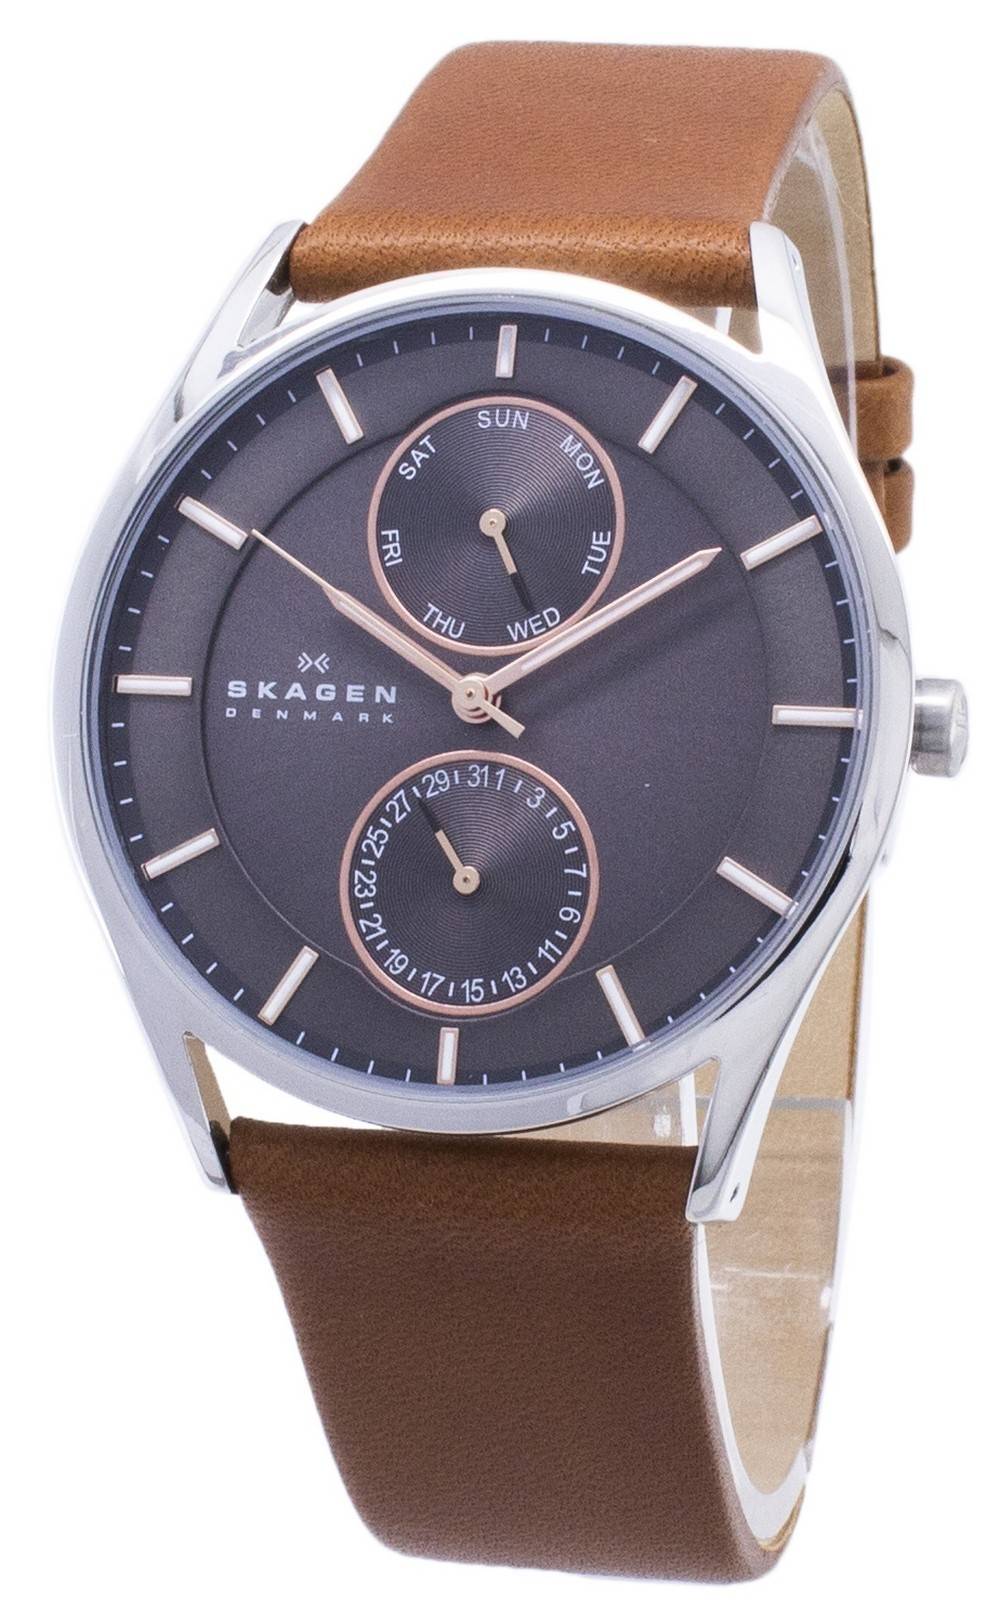 スカーゲン腕時計販売 - Creationwatches.com のための割引します。